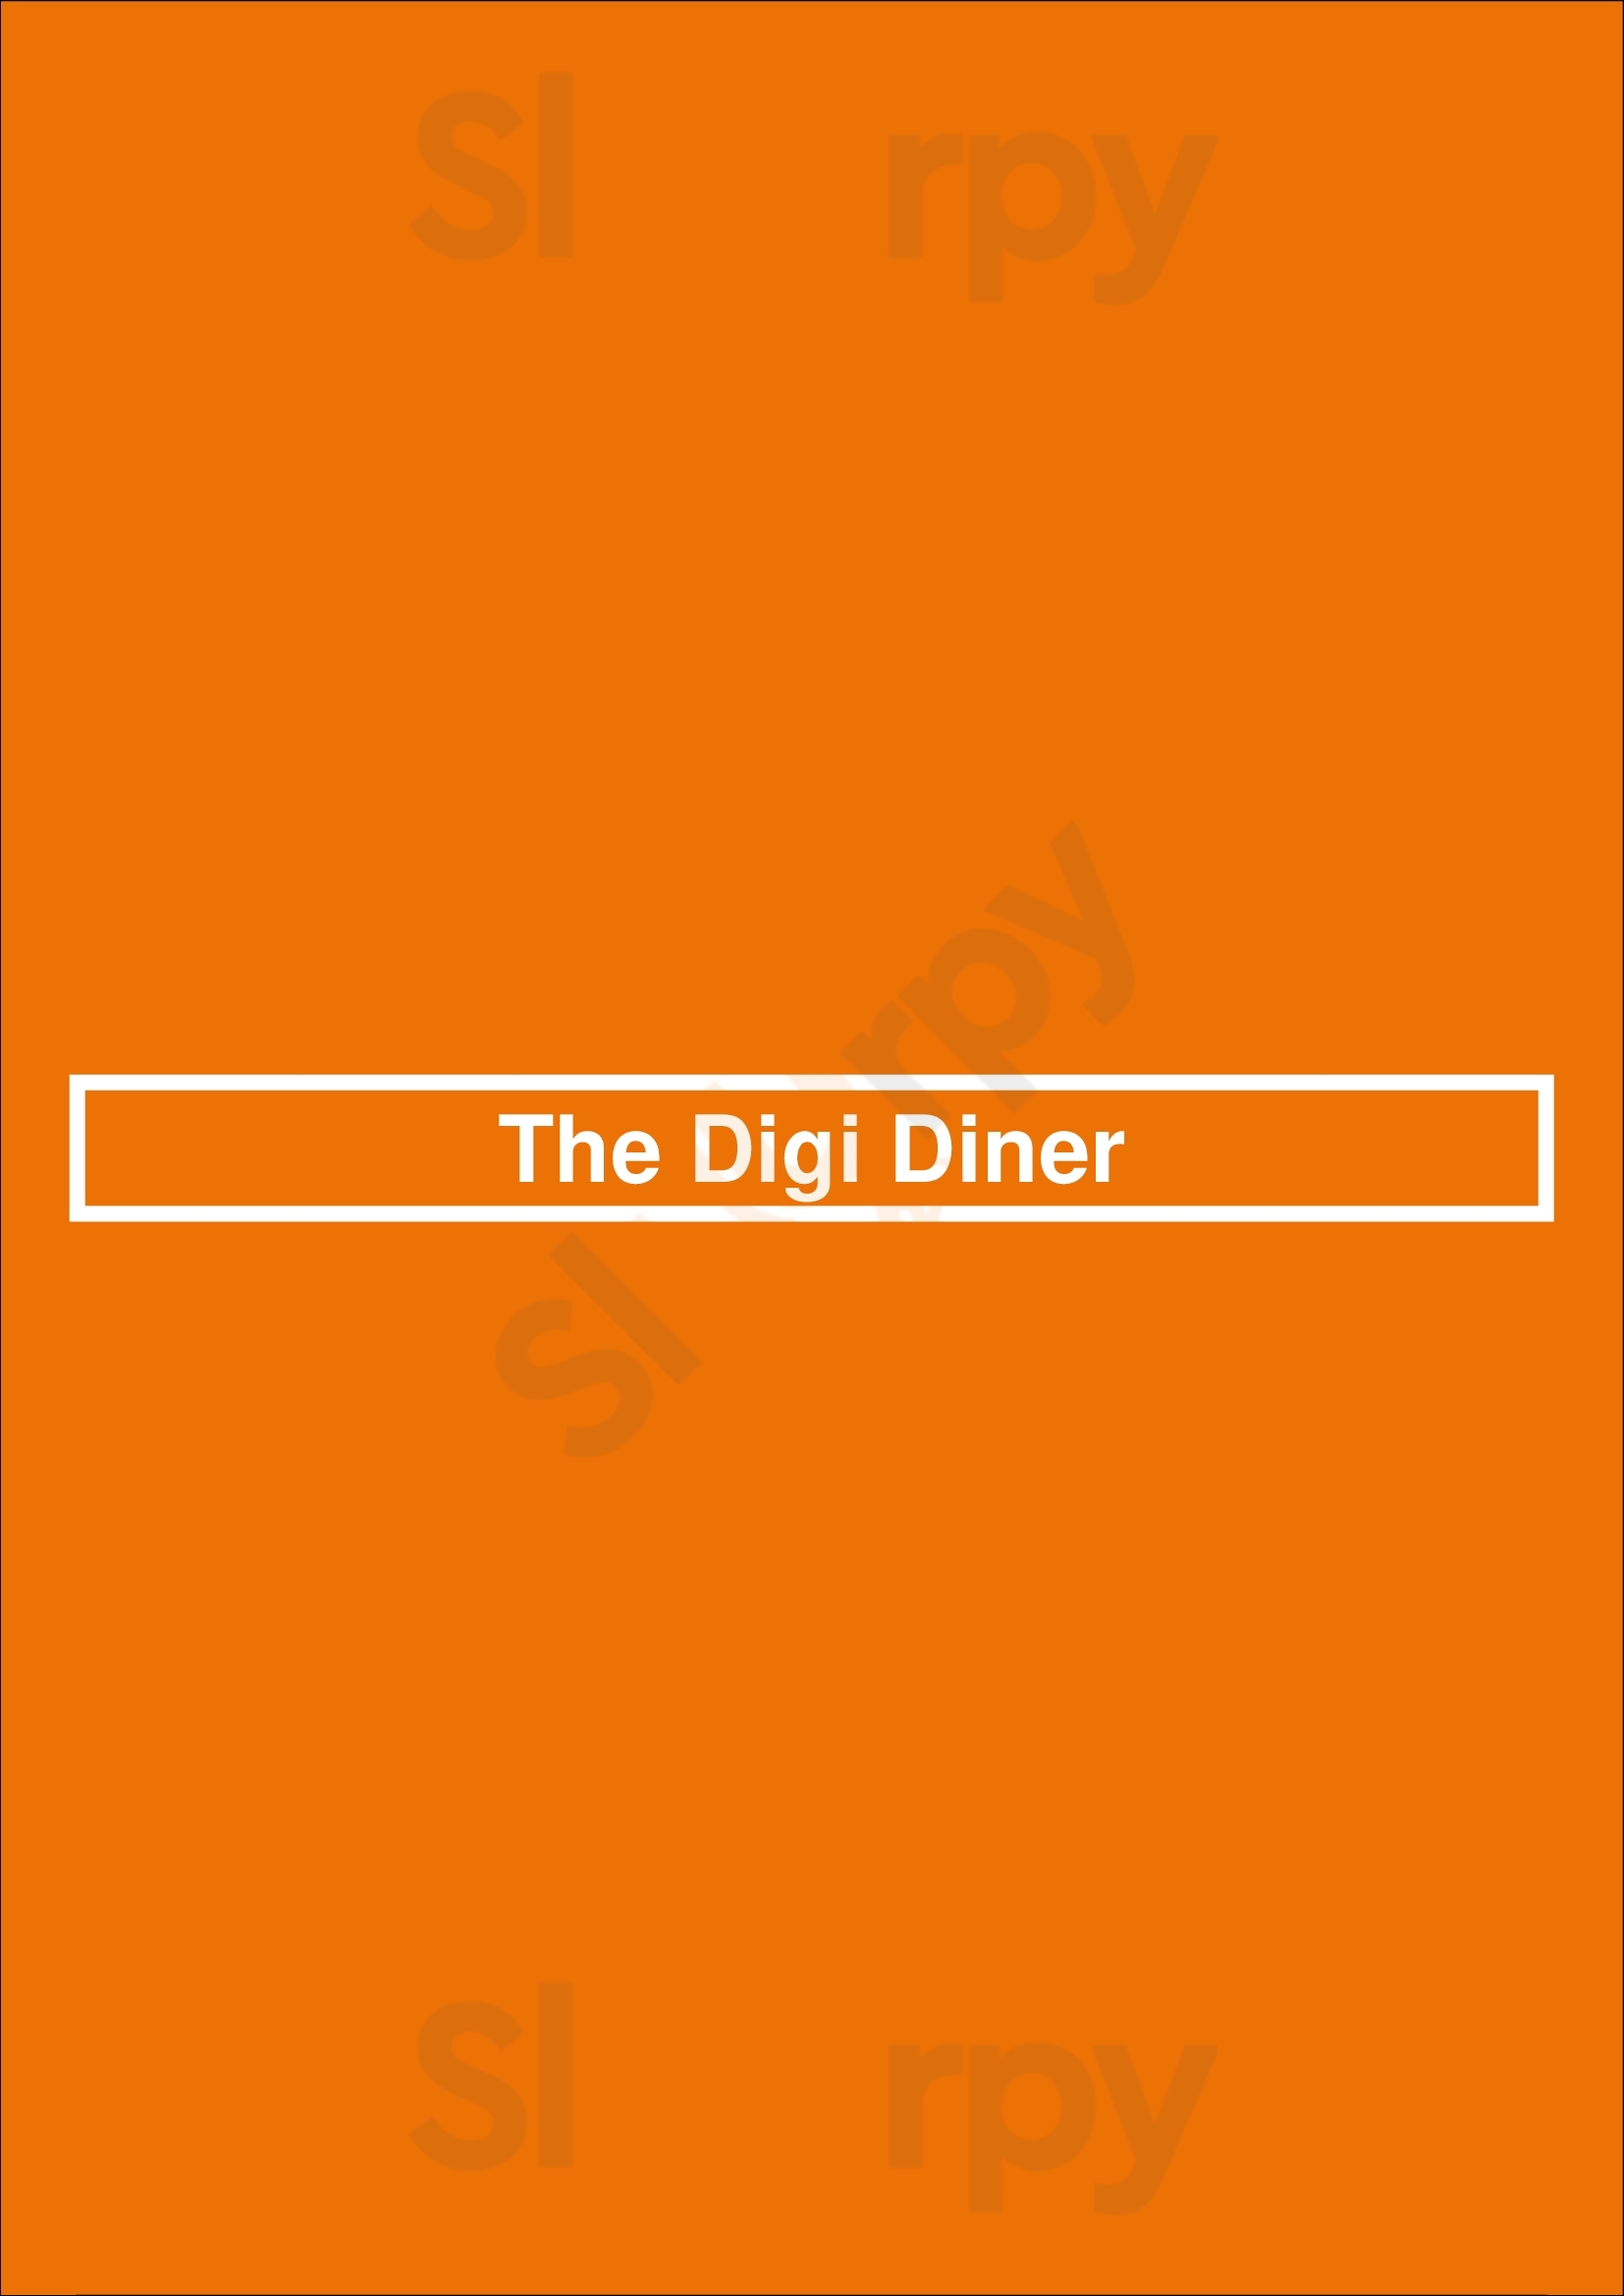 The Digi Diner Margate Menu - 1